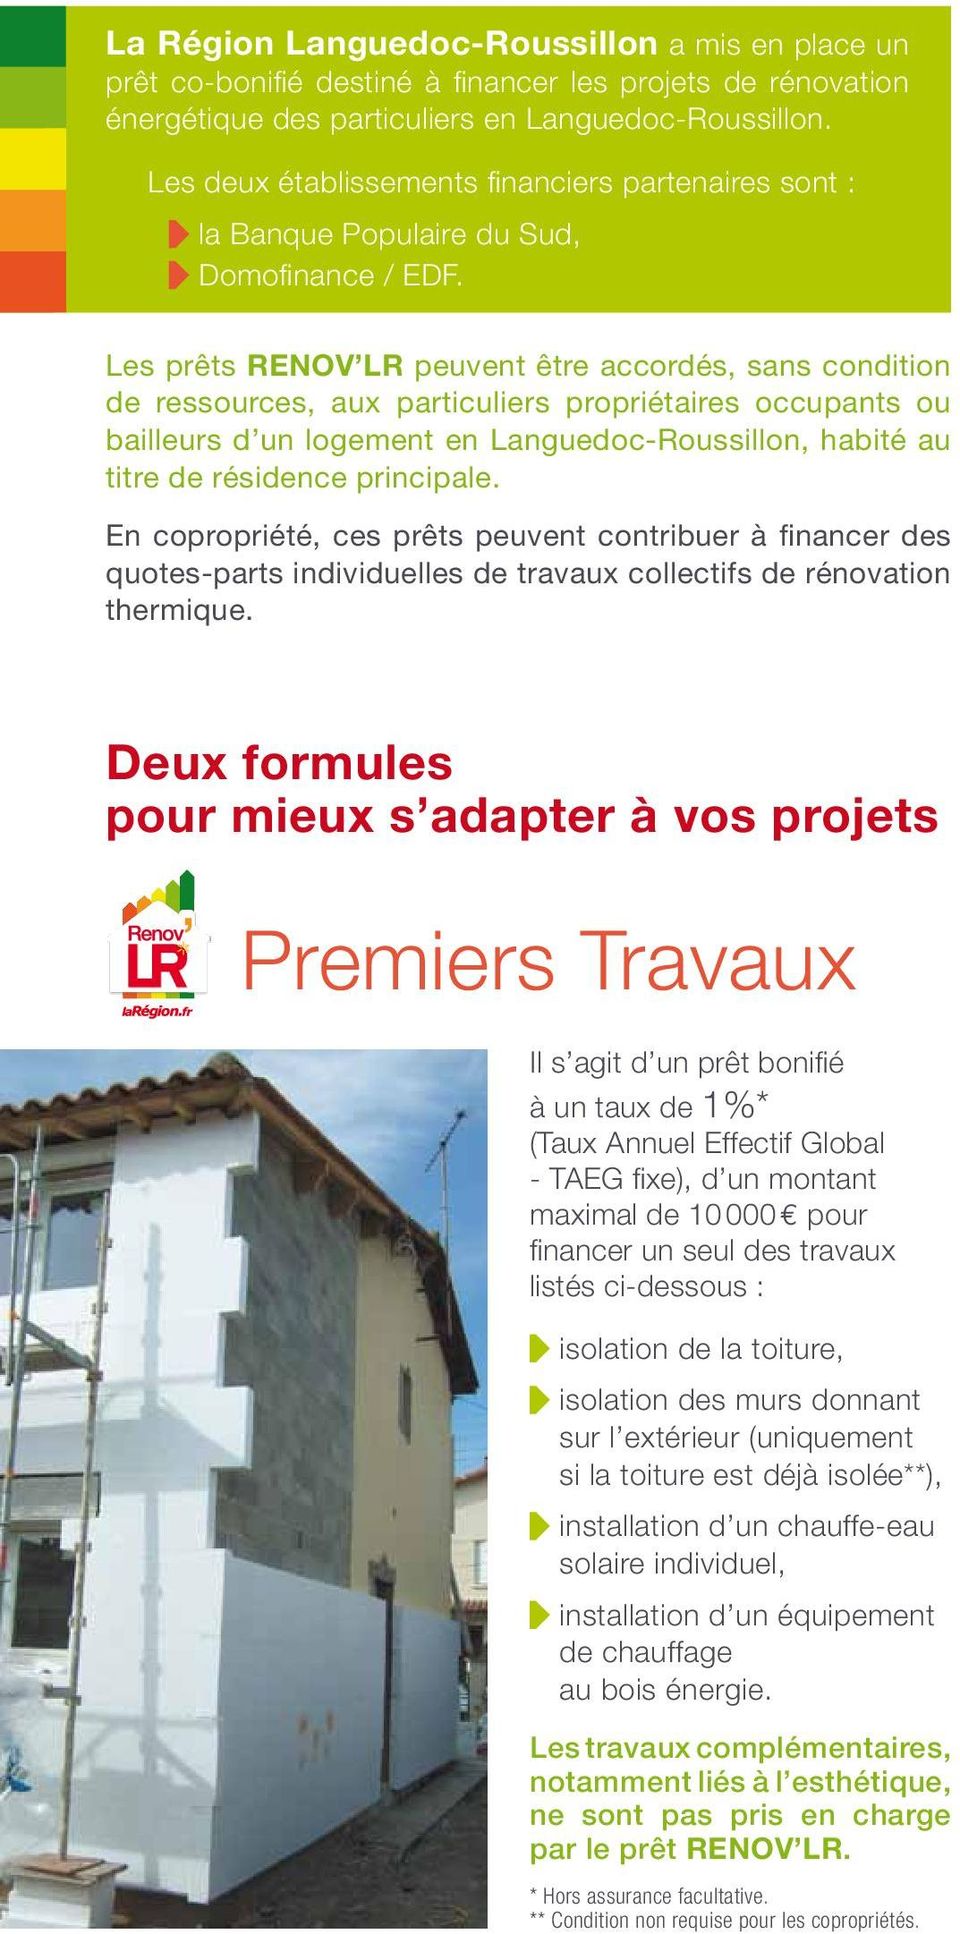 Les prêts RENOV LR peuvent être accordés, sans condition de ressources, aux particuliers propriétaires occupants ou bailleurs d un logement en Languedoc-Roussillon, habité au titre de résidence